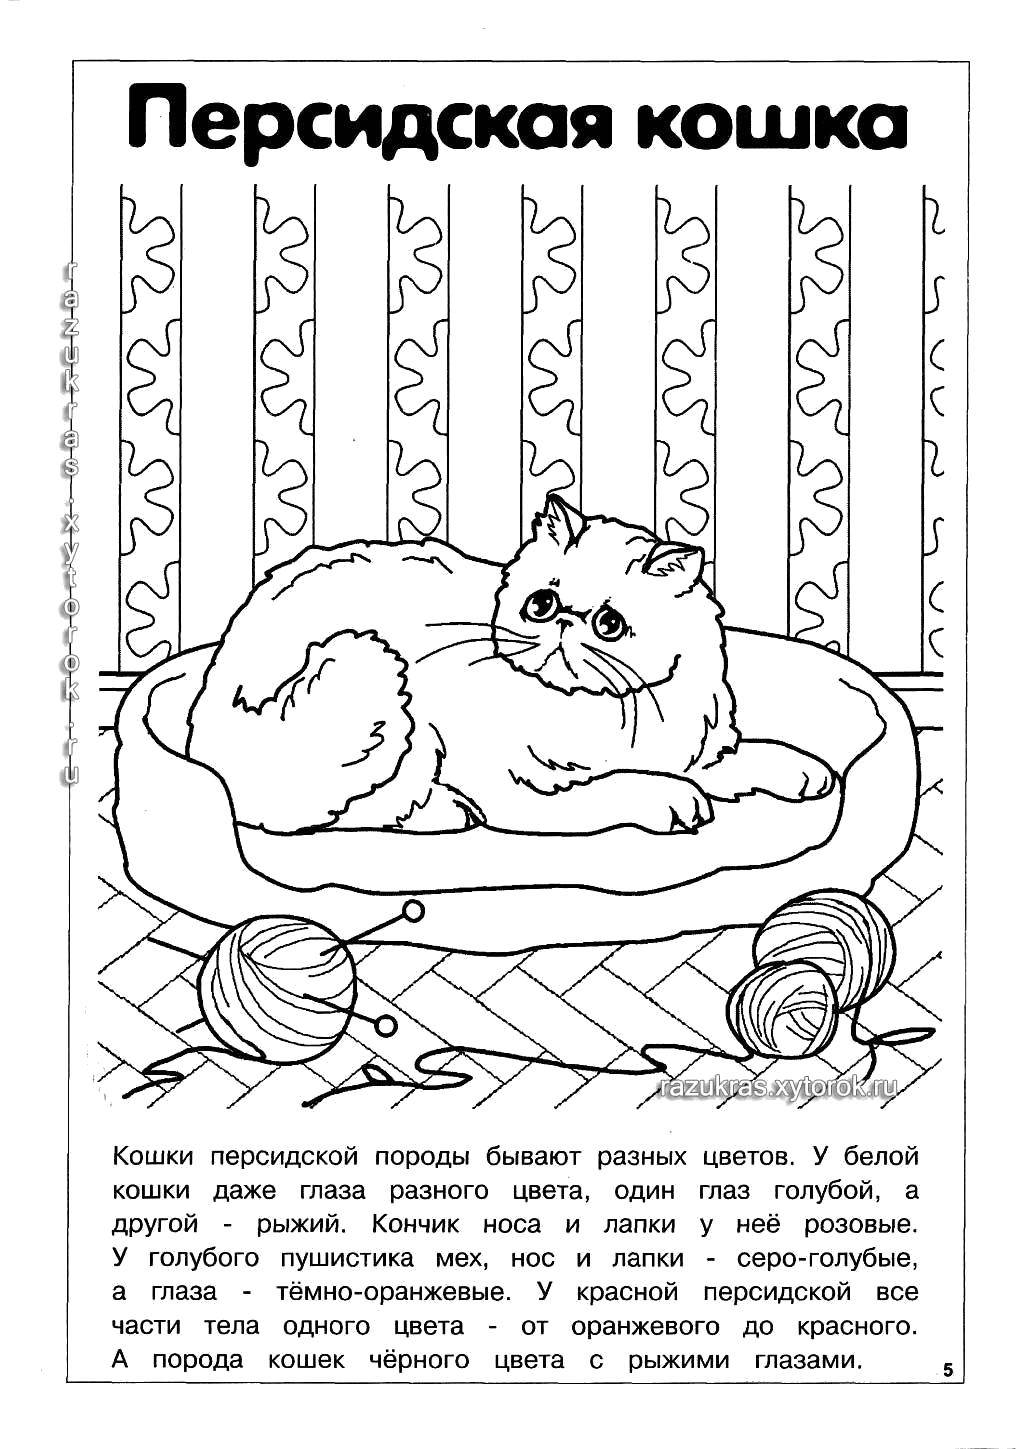 Название: Раскраска Персидская кошка. Категория: Породы кошек. Теги: Порода кошек.